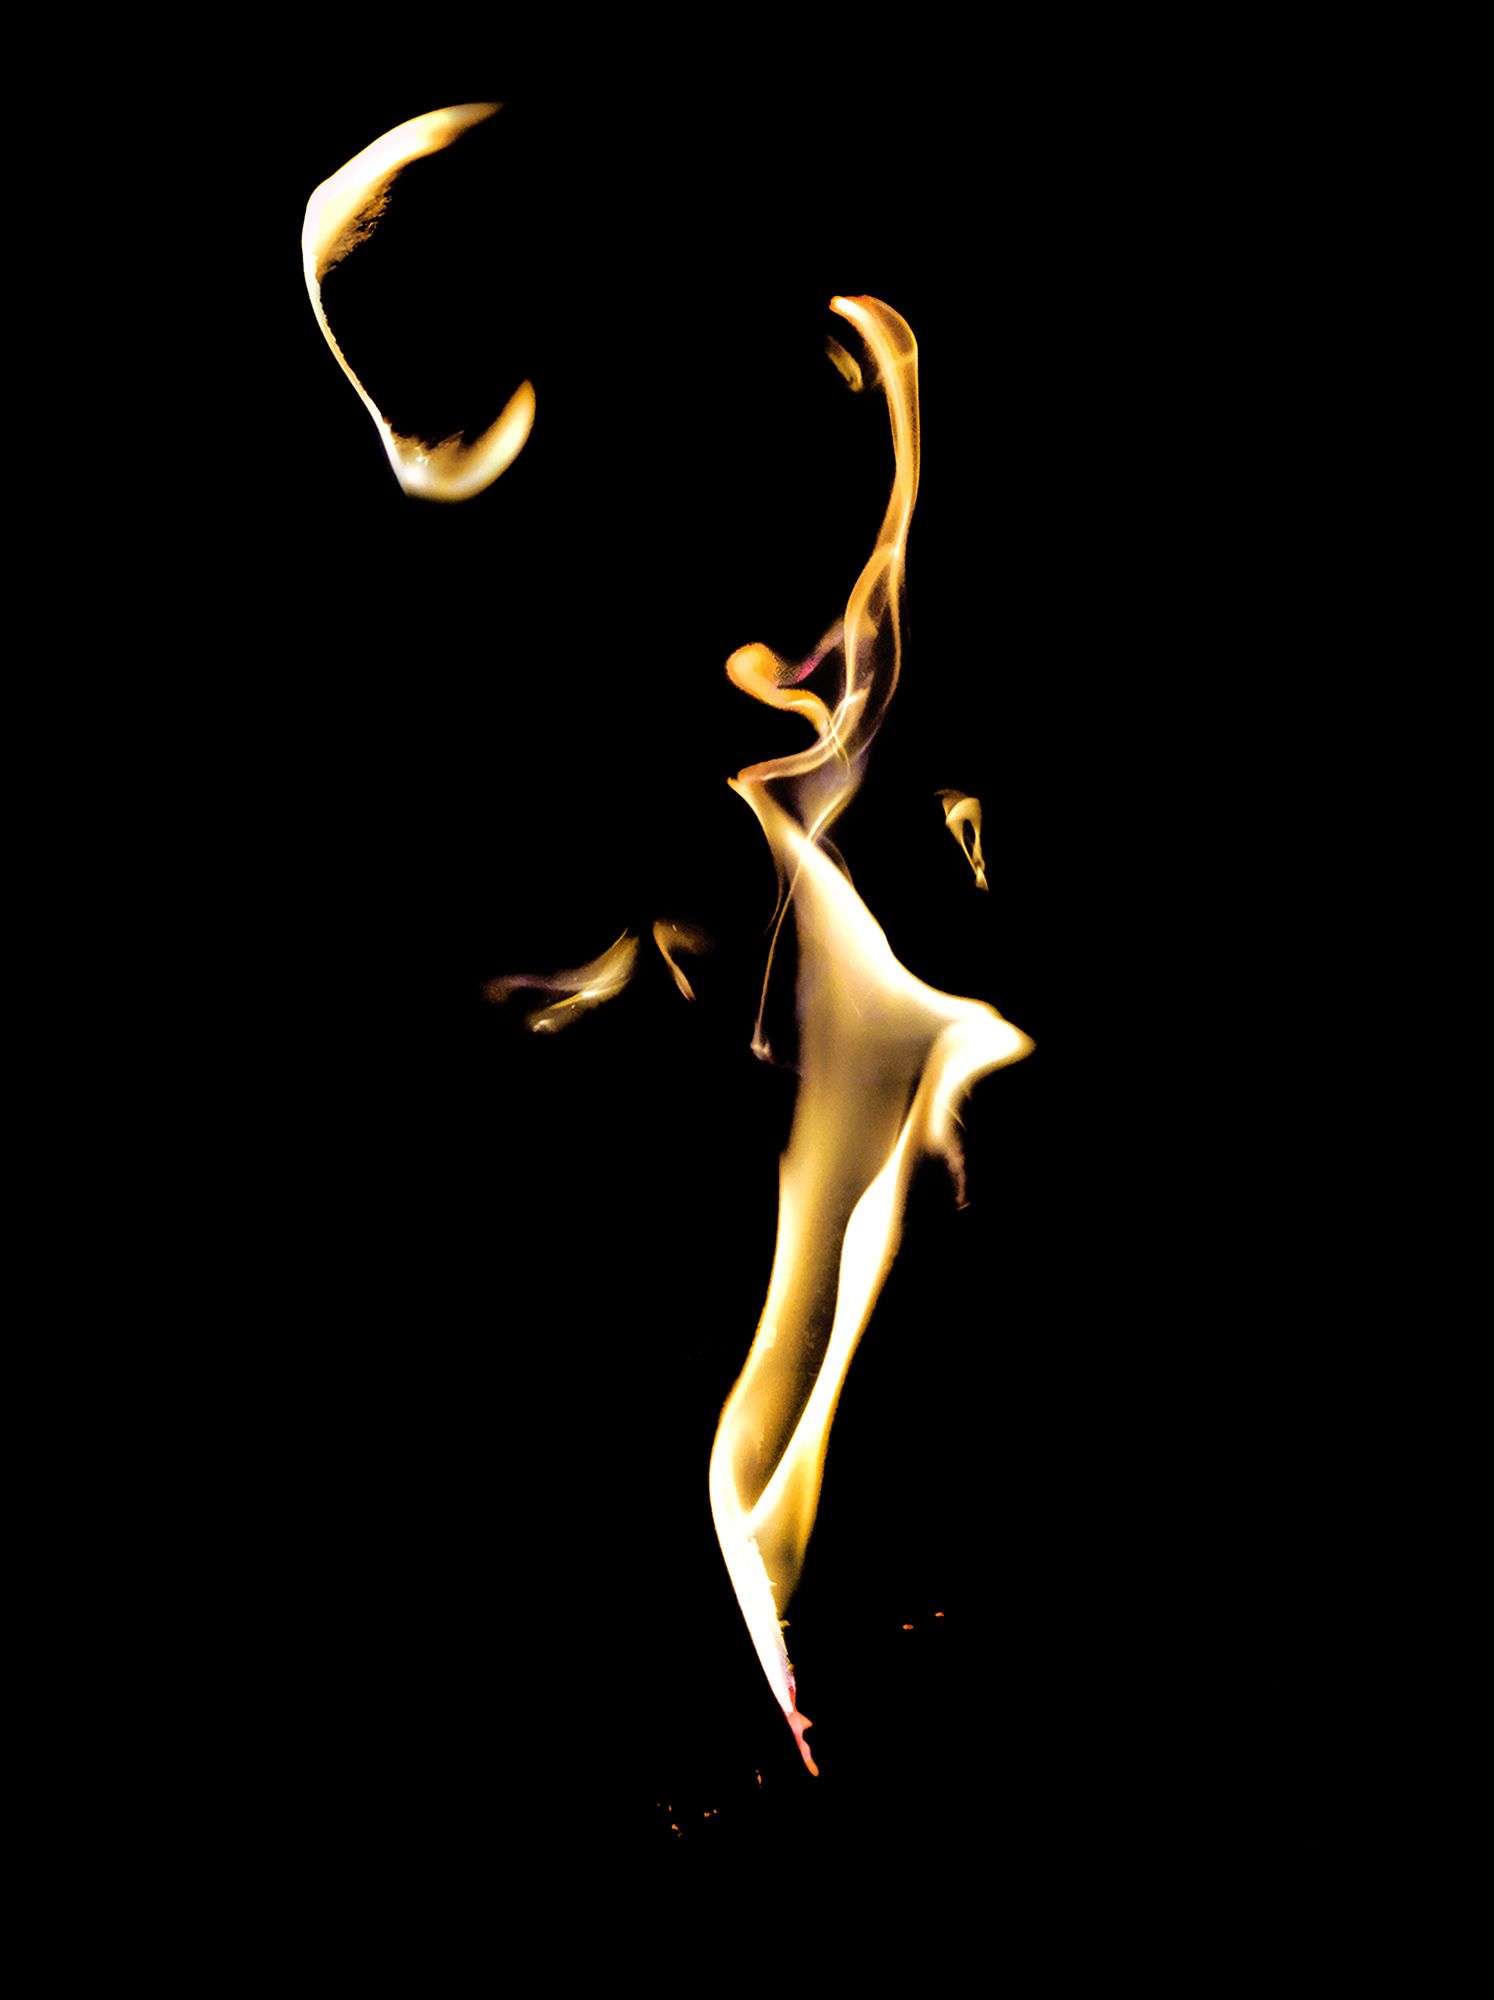 Spirit of the Fire #1 ©2021 L. Aviva Diamond